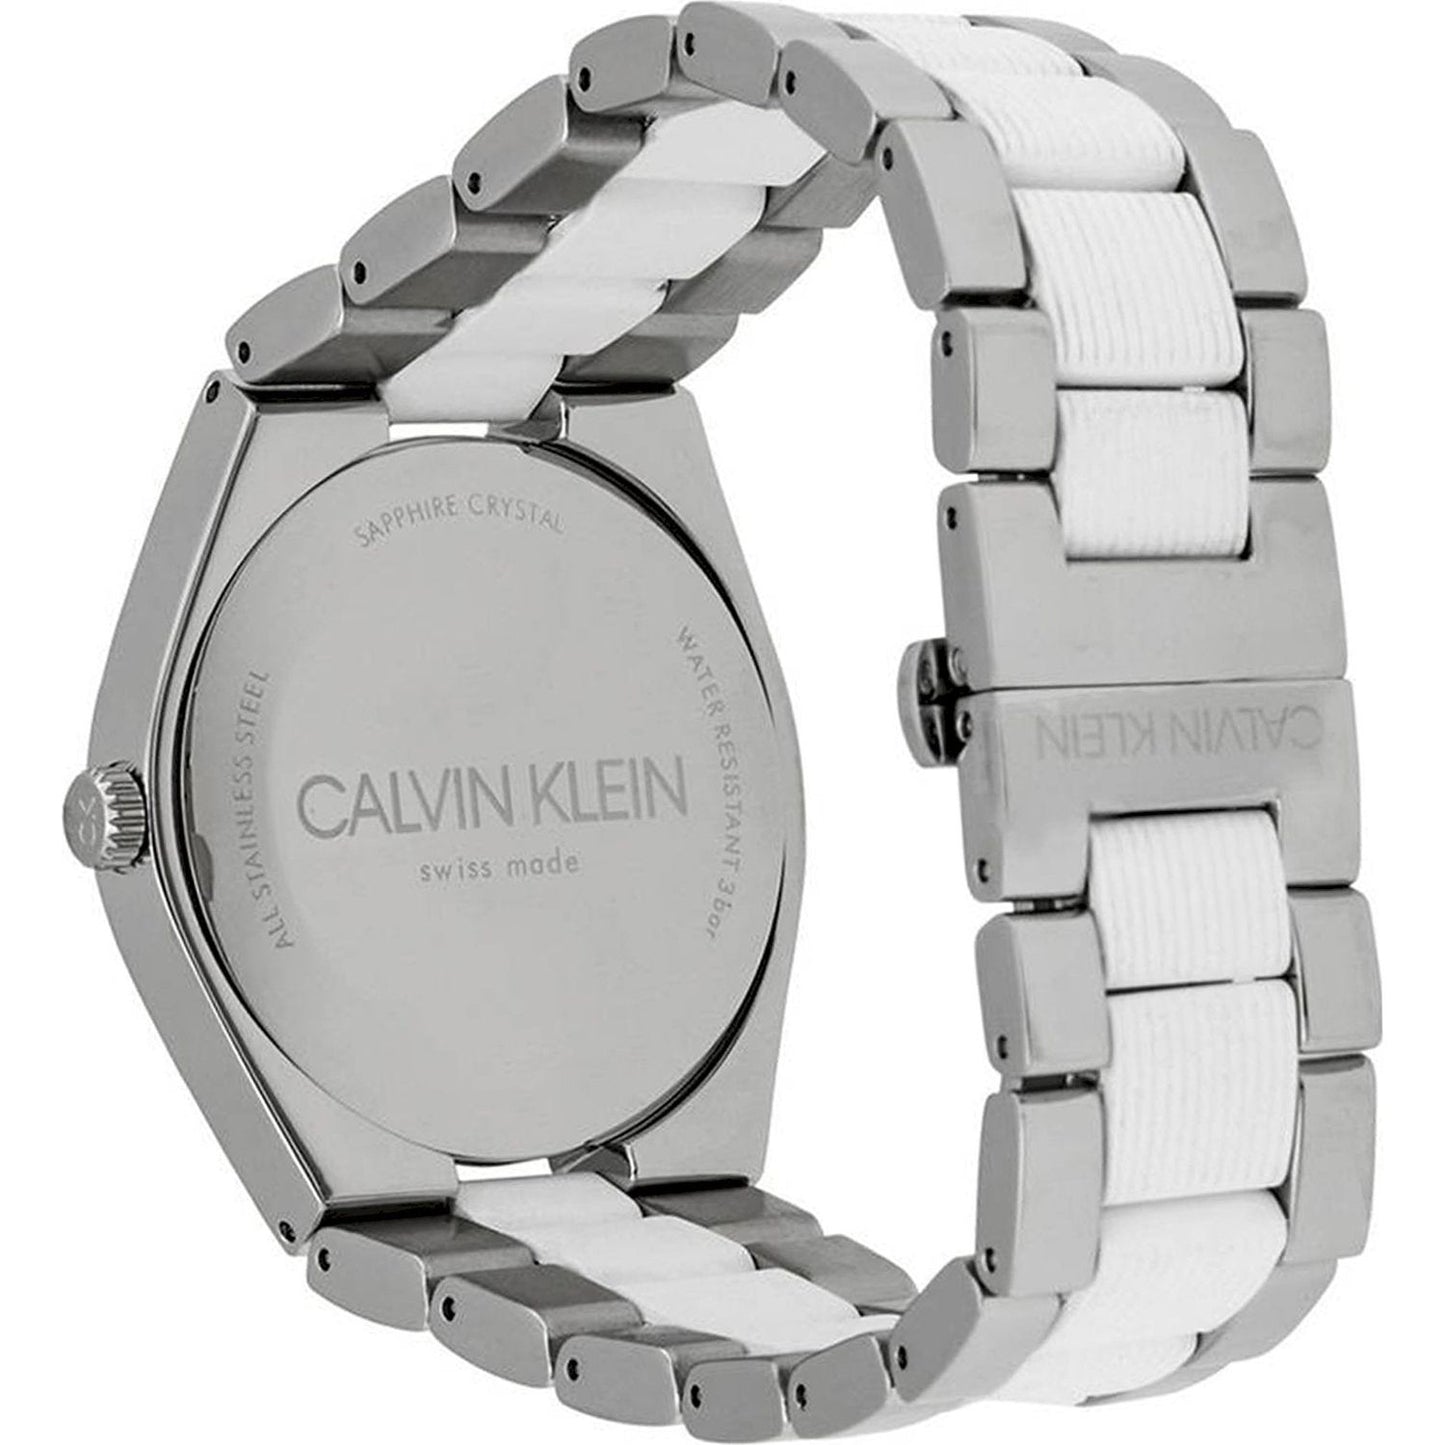 CK Calvin Klein CALVIN KLEIN Mod. CONTRAST WATCHES calvin-klein-mod-contrast-2